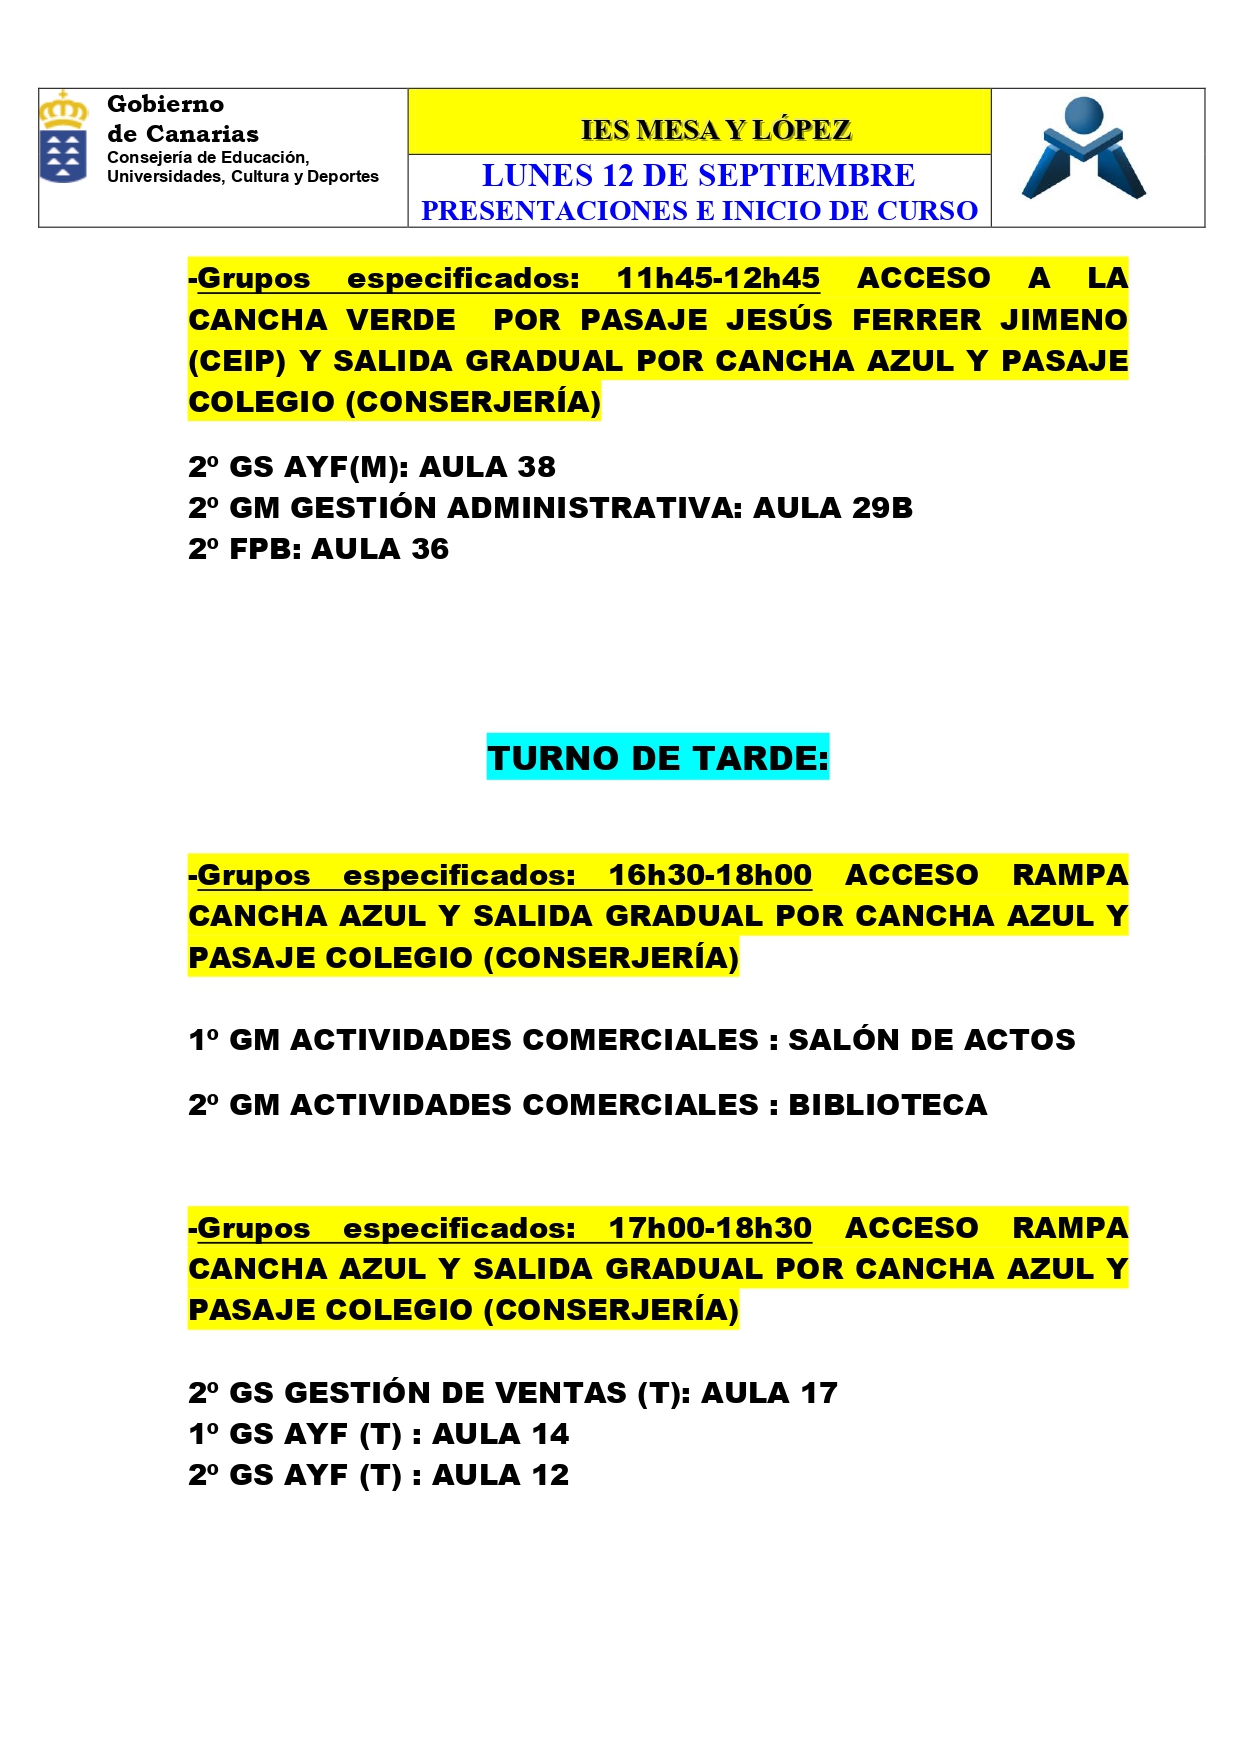 PRESENTACIONES E INICIO DE CLASES 12 SEPTIEMBRE page 0005